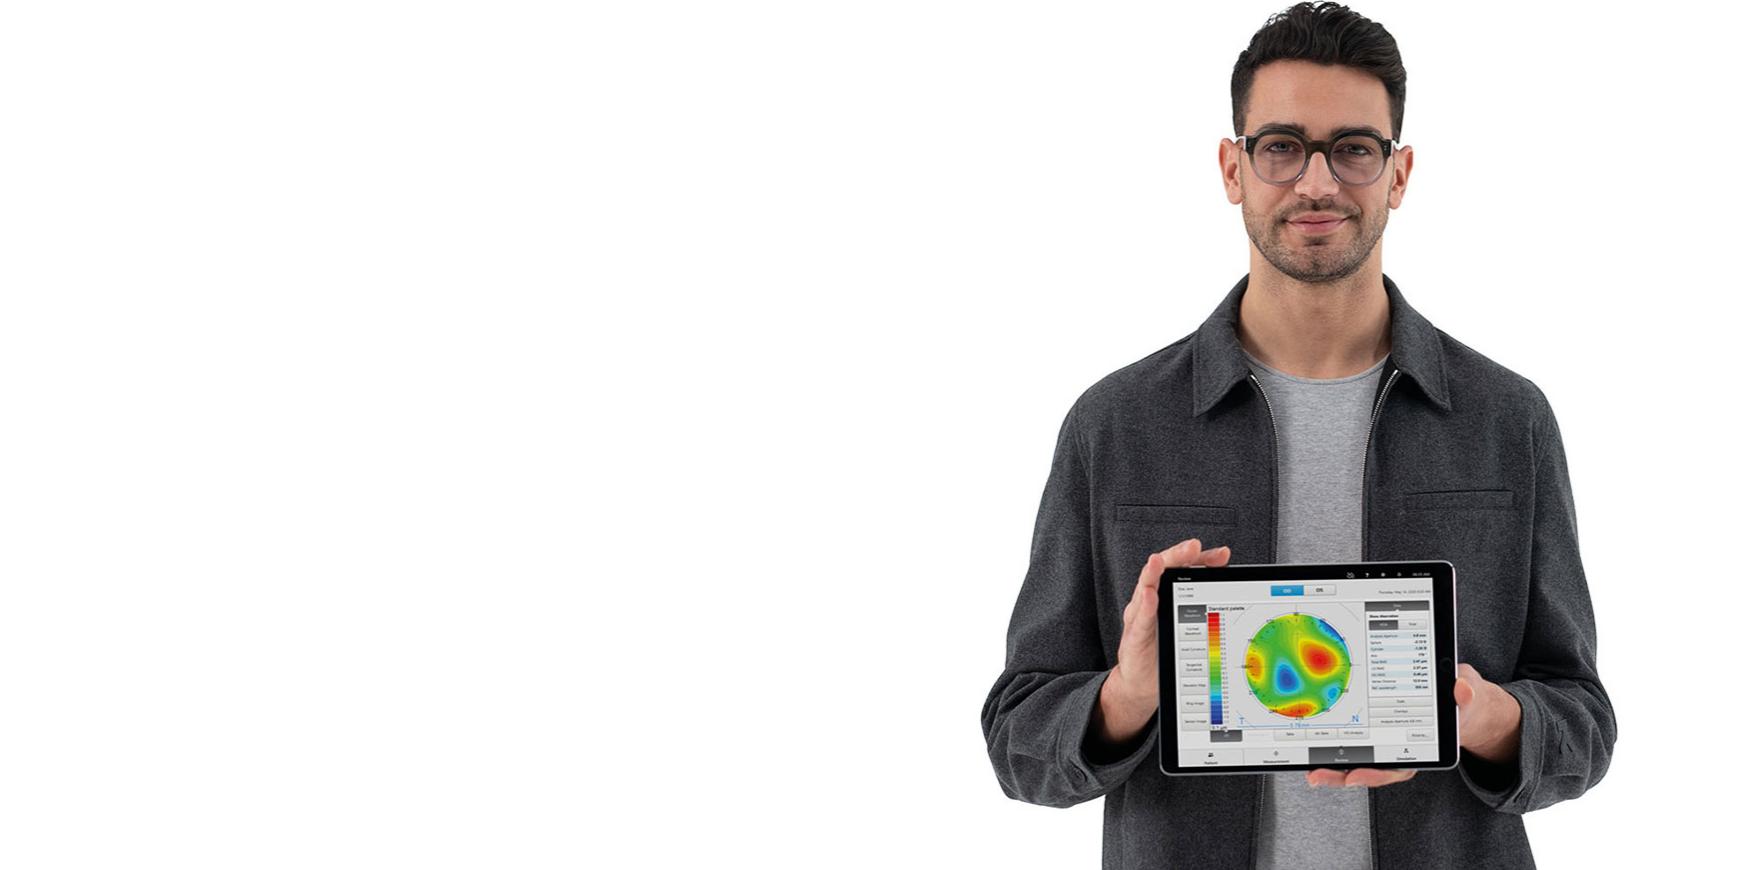 Młody mężczyzna w okularach z soczewkami ZEISS spogląda prosto w kamerę i trzyma iPada, na którym widać wstępne informacje bazowe niezbędne do dokładnej subiektywnej refrakcji.